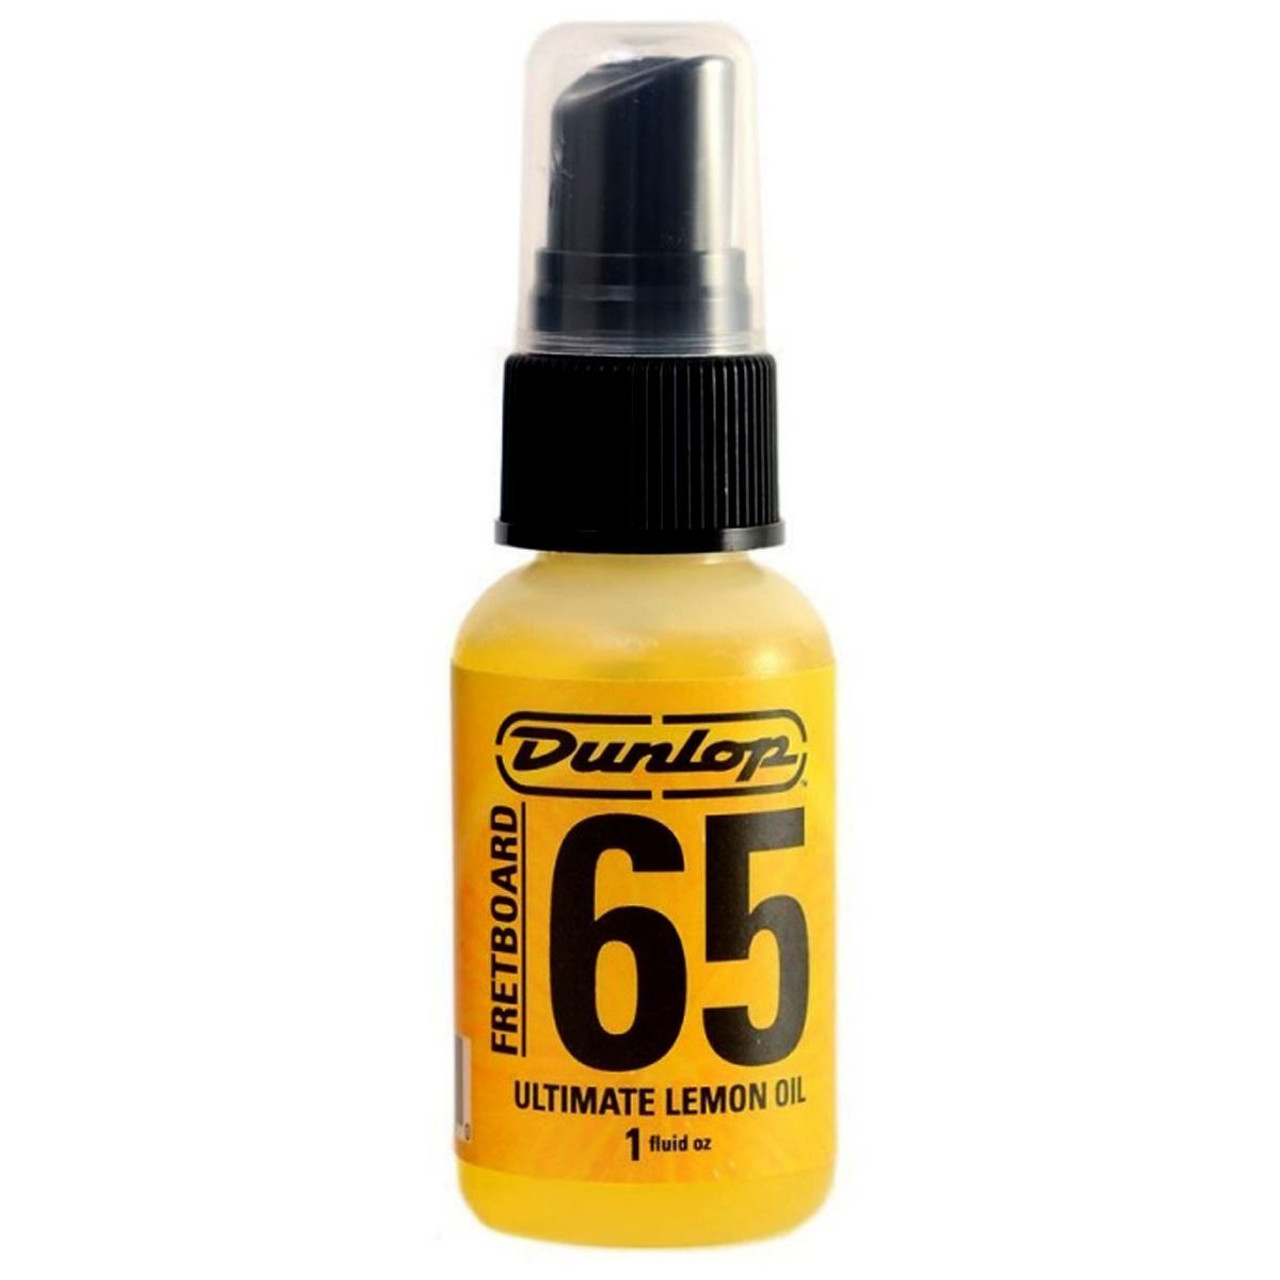 Dunlop Ultimate lemon oil fretboard oil 4 Oz